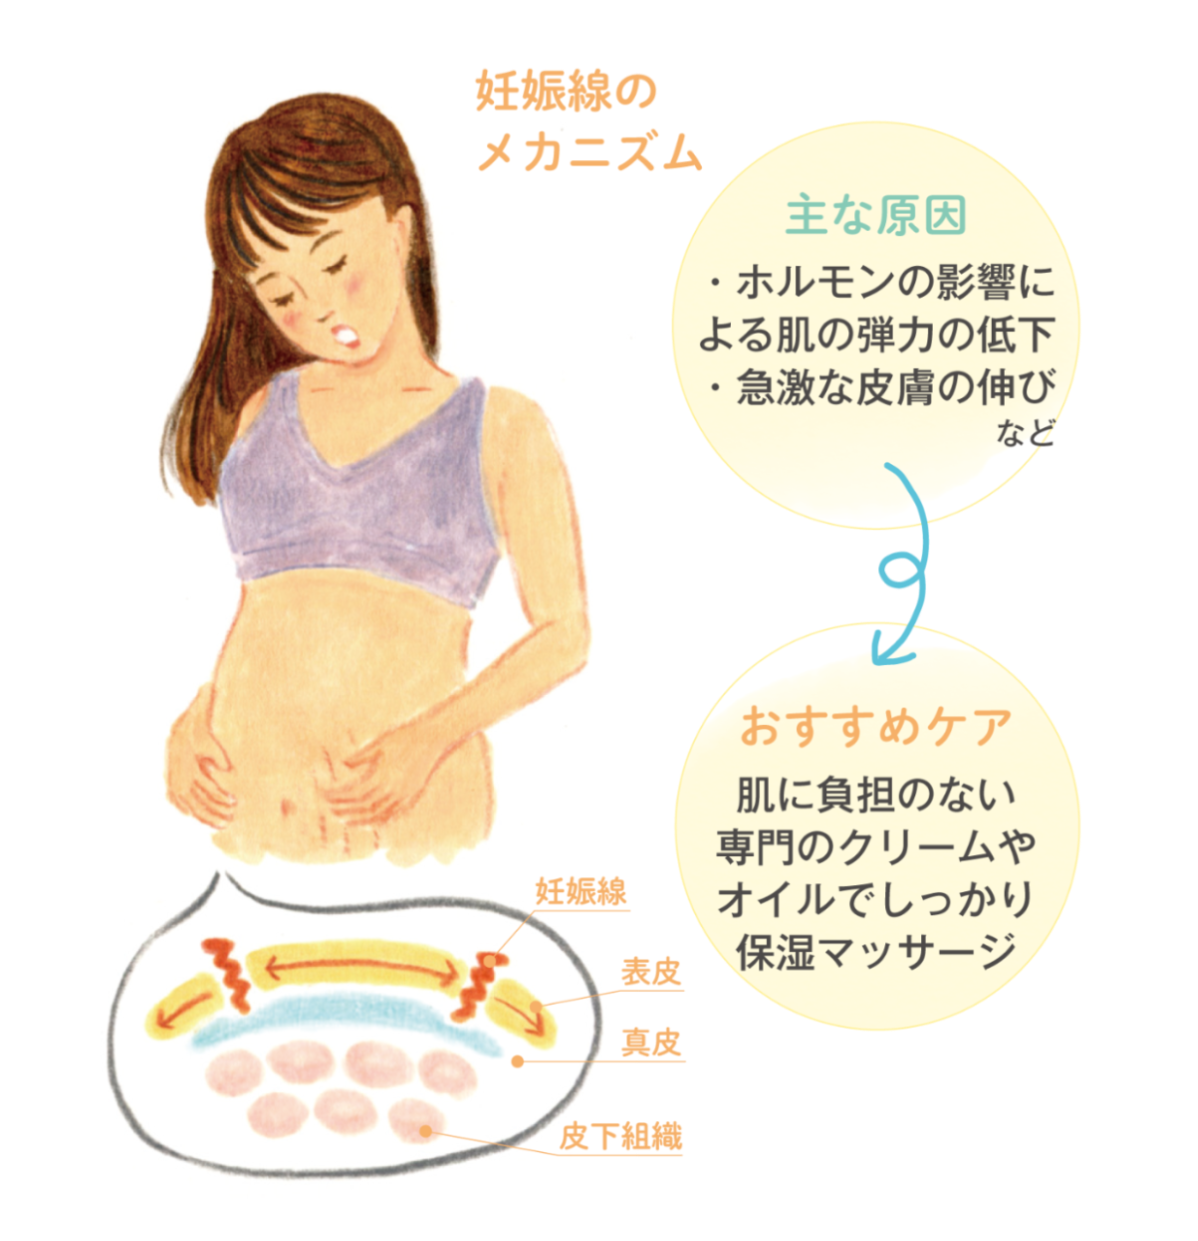 妊娠線の予防 ケア